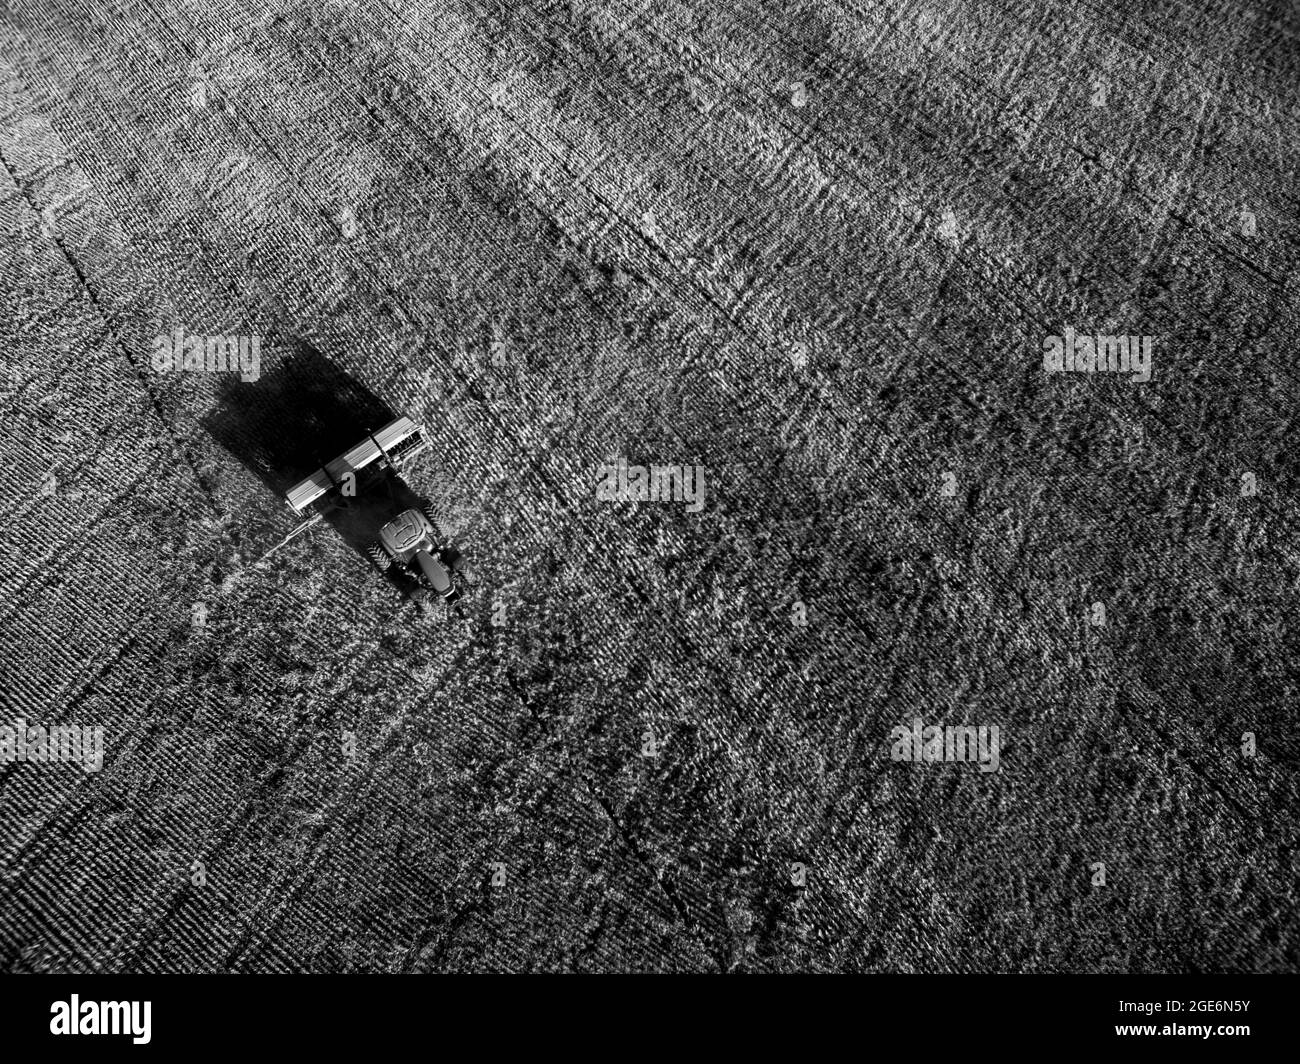 Traktor säen Getreide in der argentinischen Landschaft, Provinz Buenos Aires, Argentinien. Stockfoto